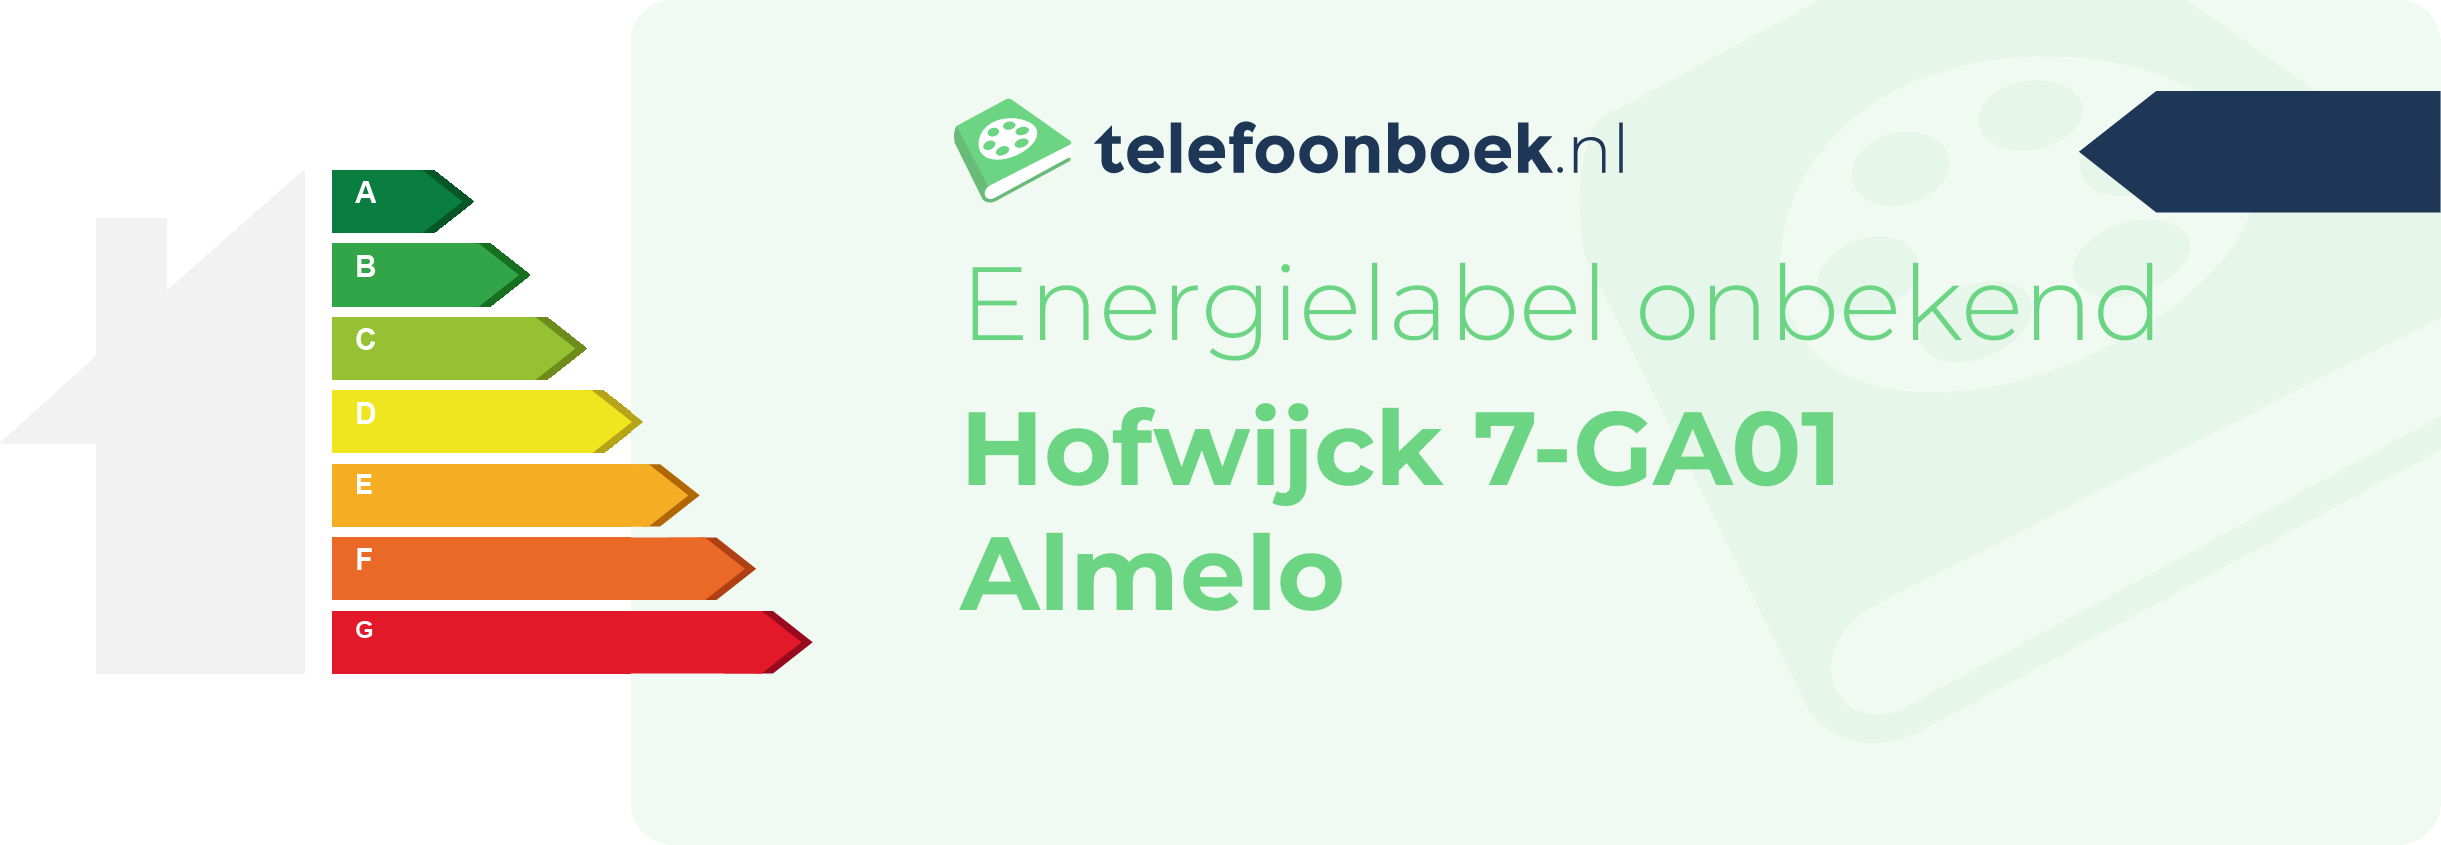 Energielabel Hofwijck 7-GA01 Almelo